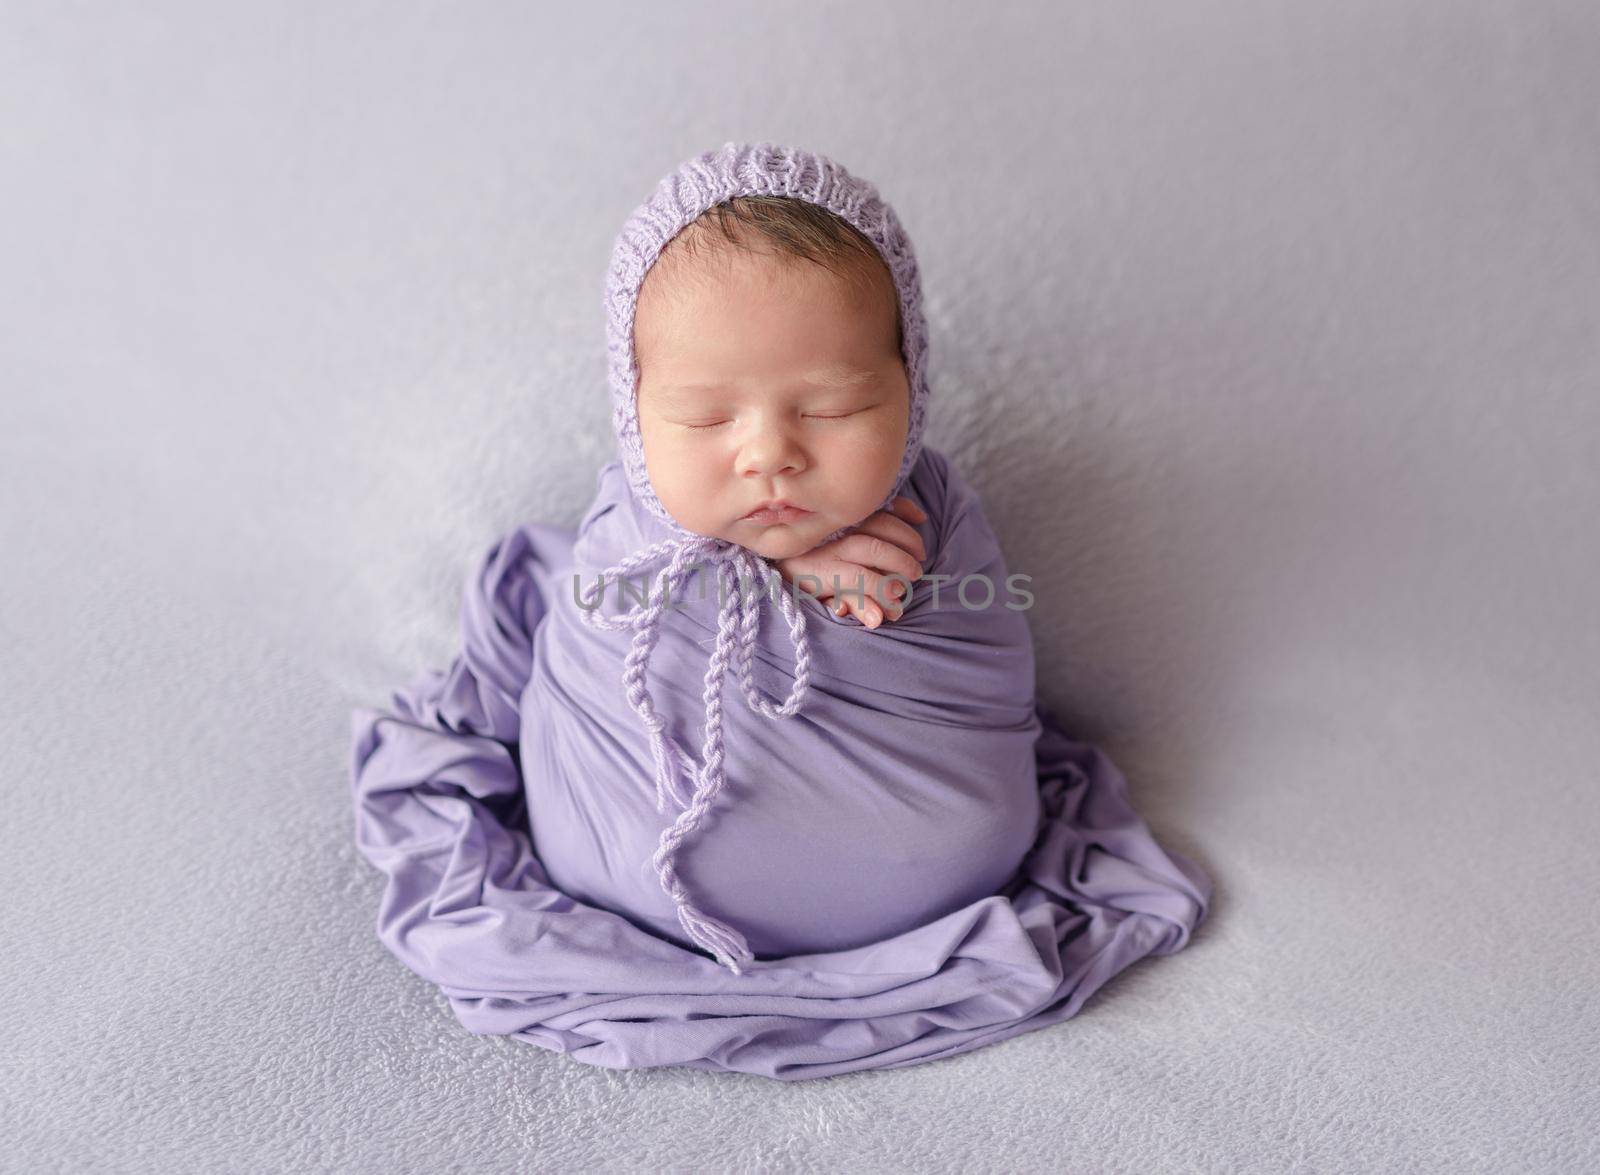 Cute sleeping newborn baby girl in violet